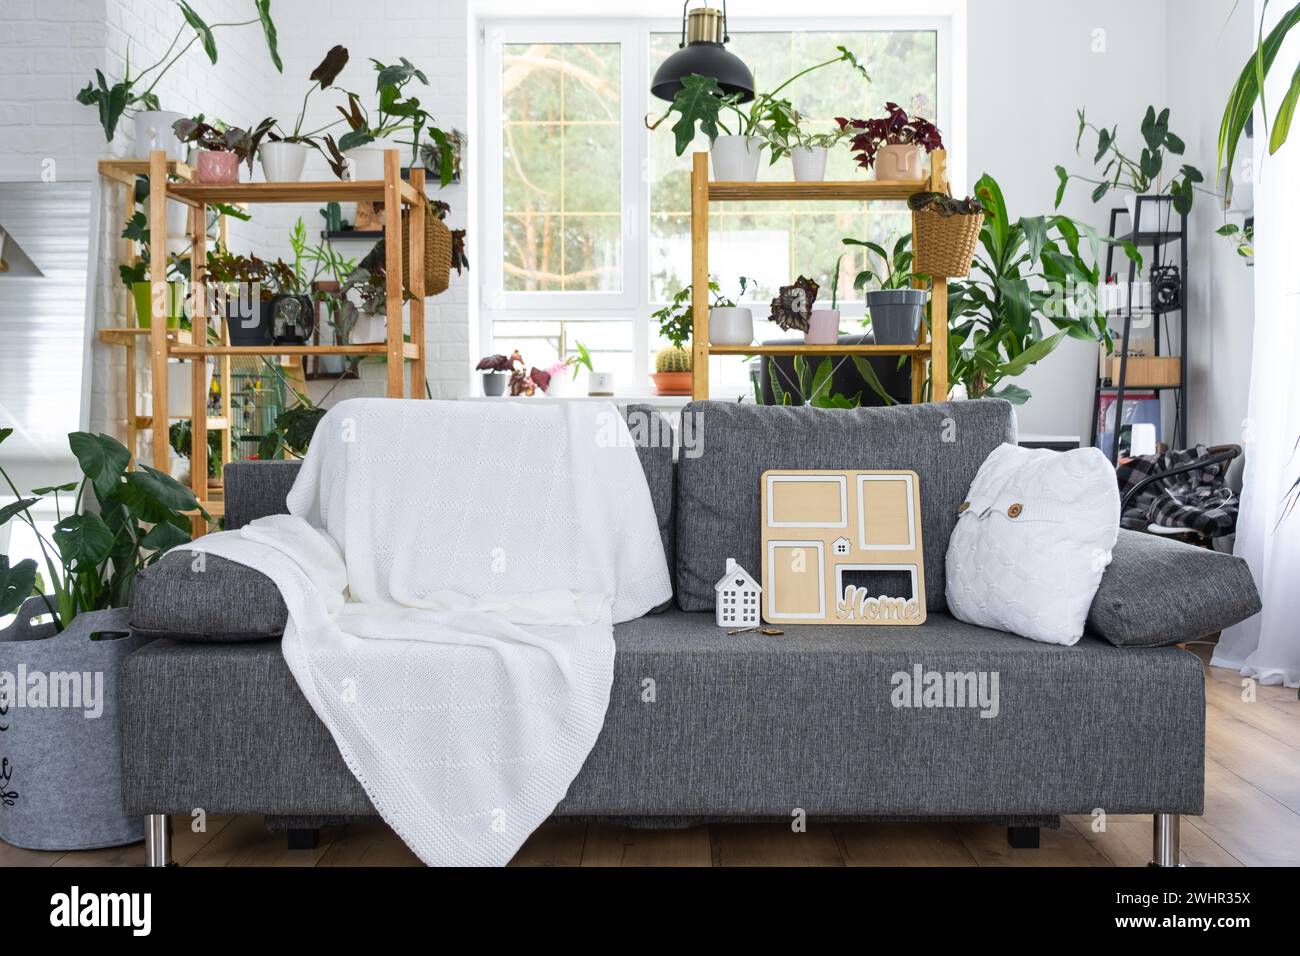 Chiave per la casa con portachiavi e struttura in miniatura della casa su divano grigio con interni bianchi con piante in vaso. Progettazione, progettazione Foto Stock